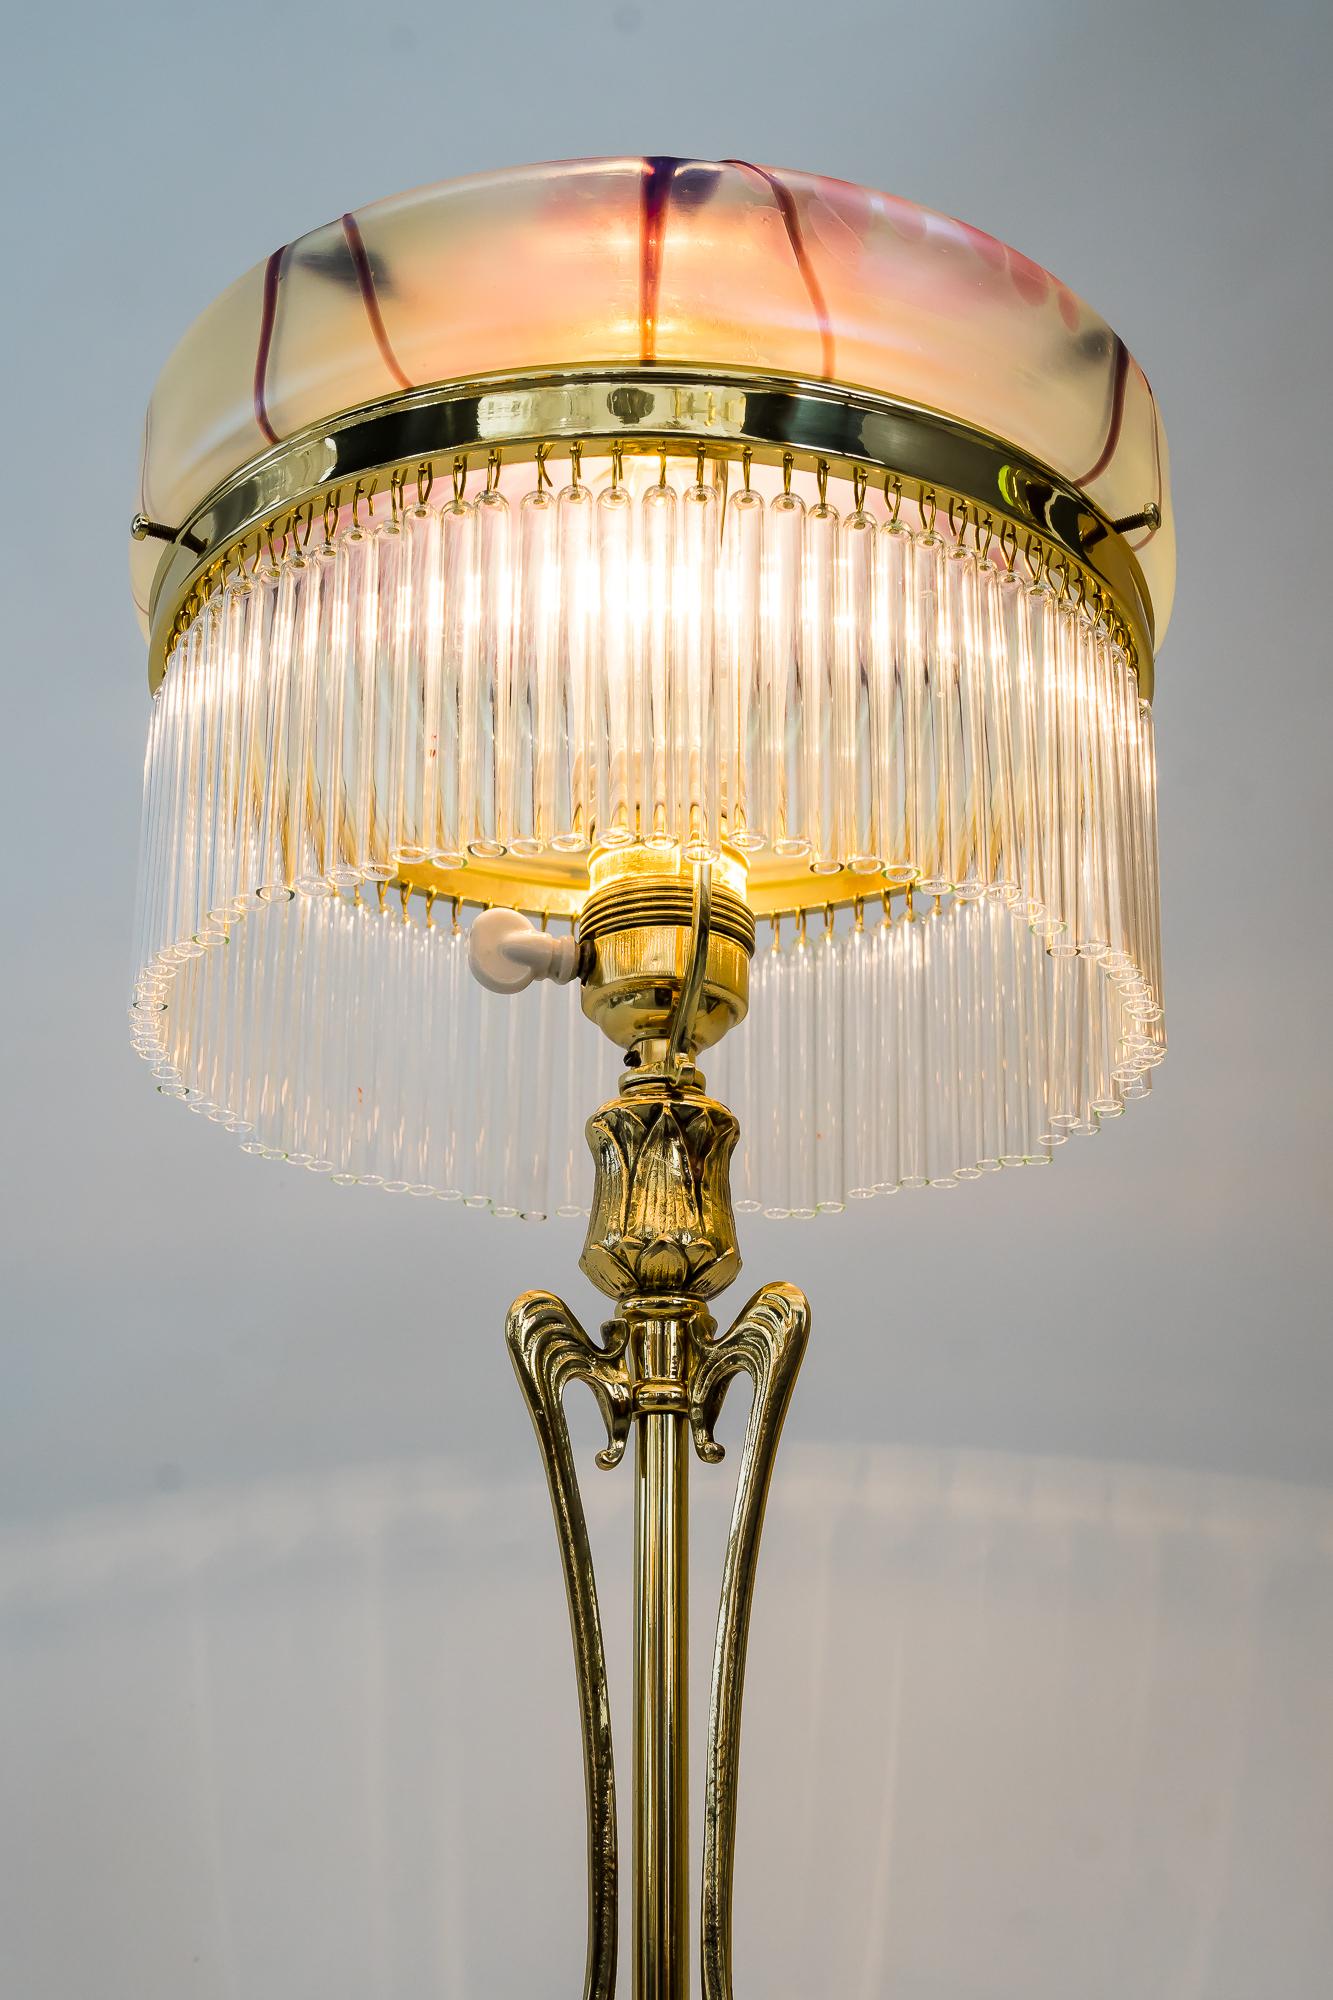 Jugendstil Table Lamp Around 1908 with Original Palme Koenig Glass Shade 13